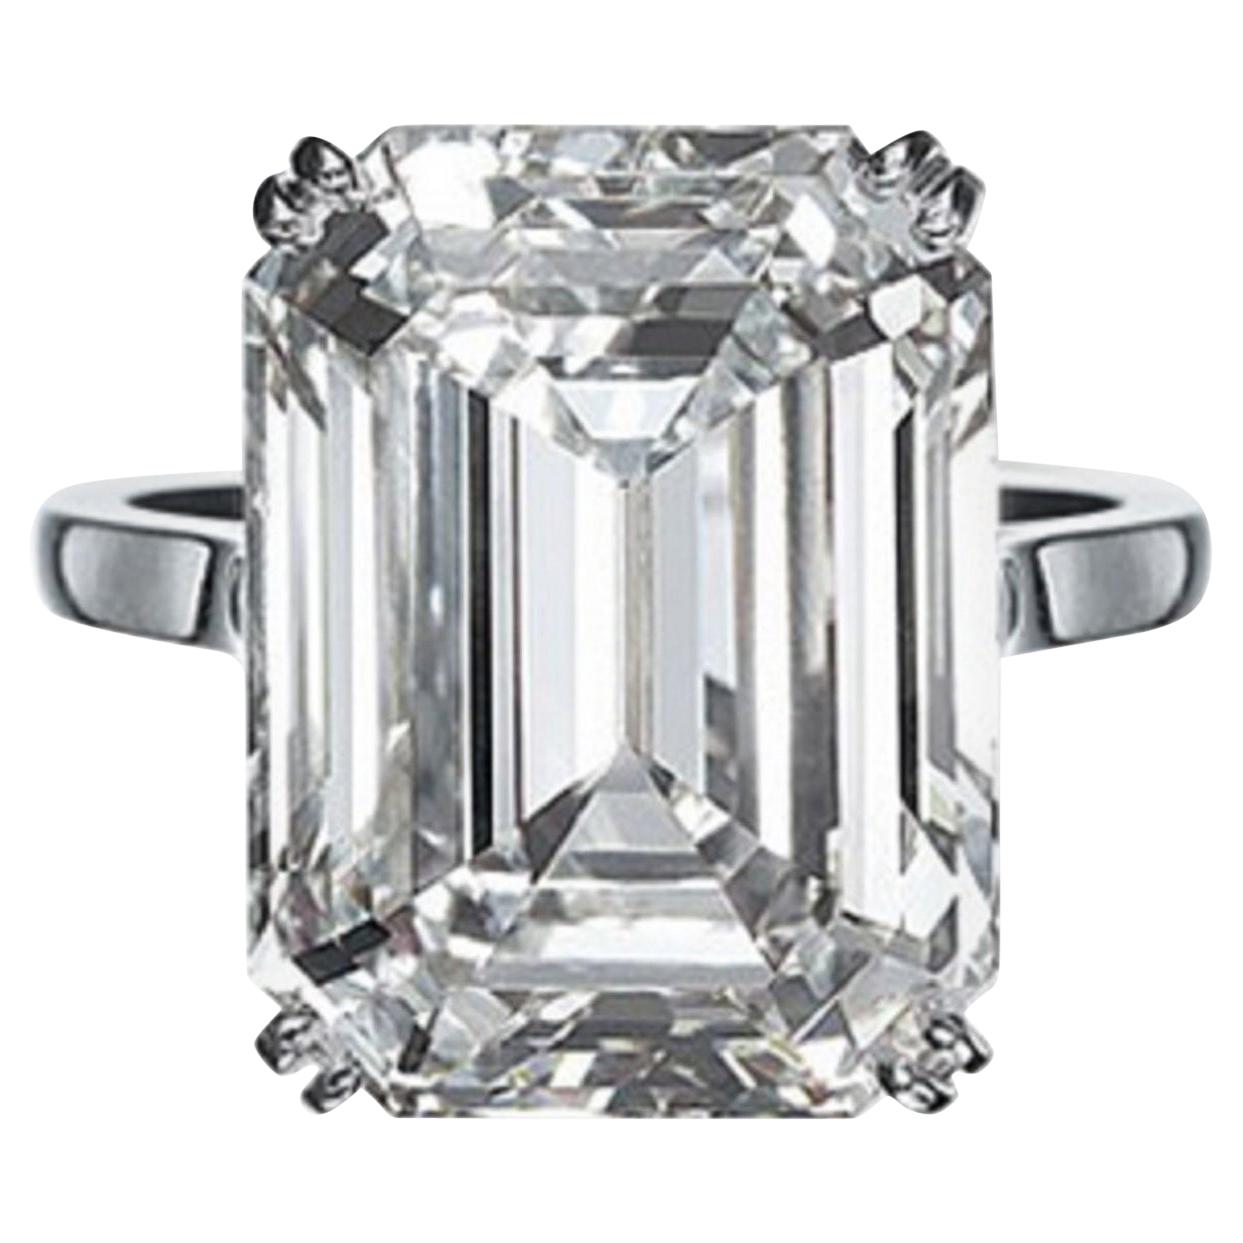 IGI Certified 10.01 Carat Excellent Cut Emerald Diamond Ring